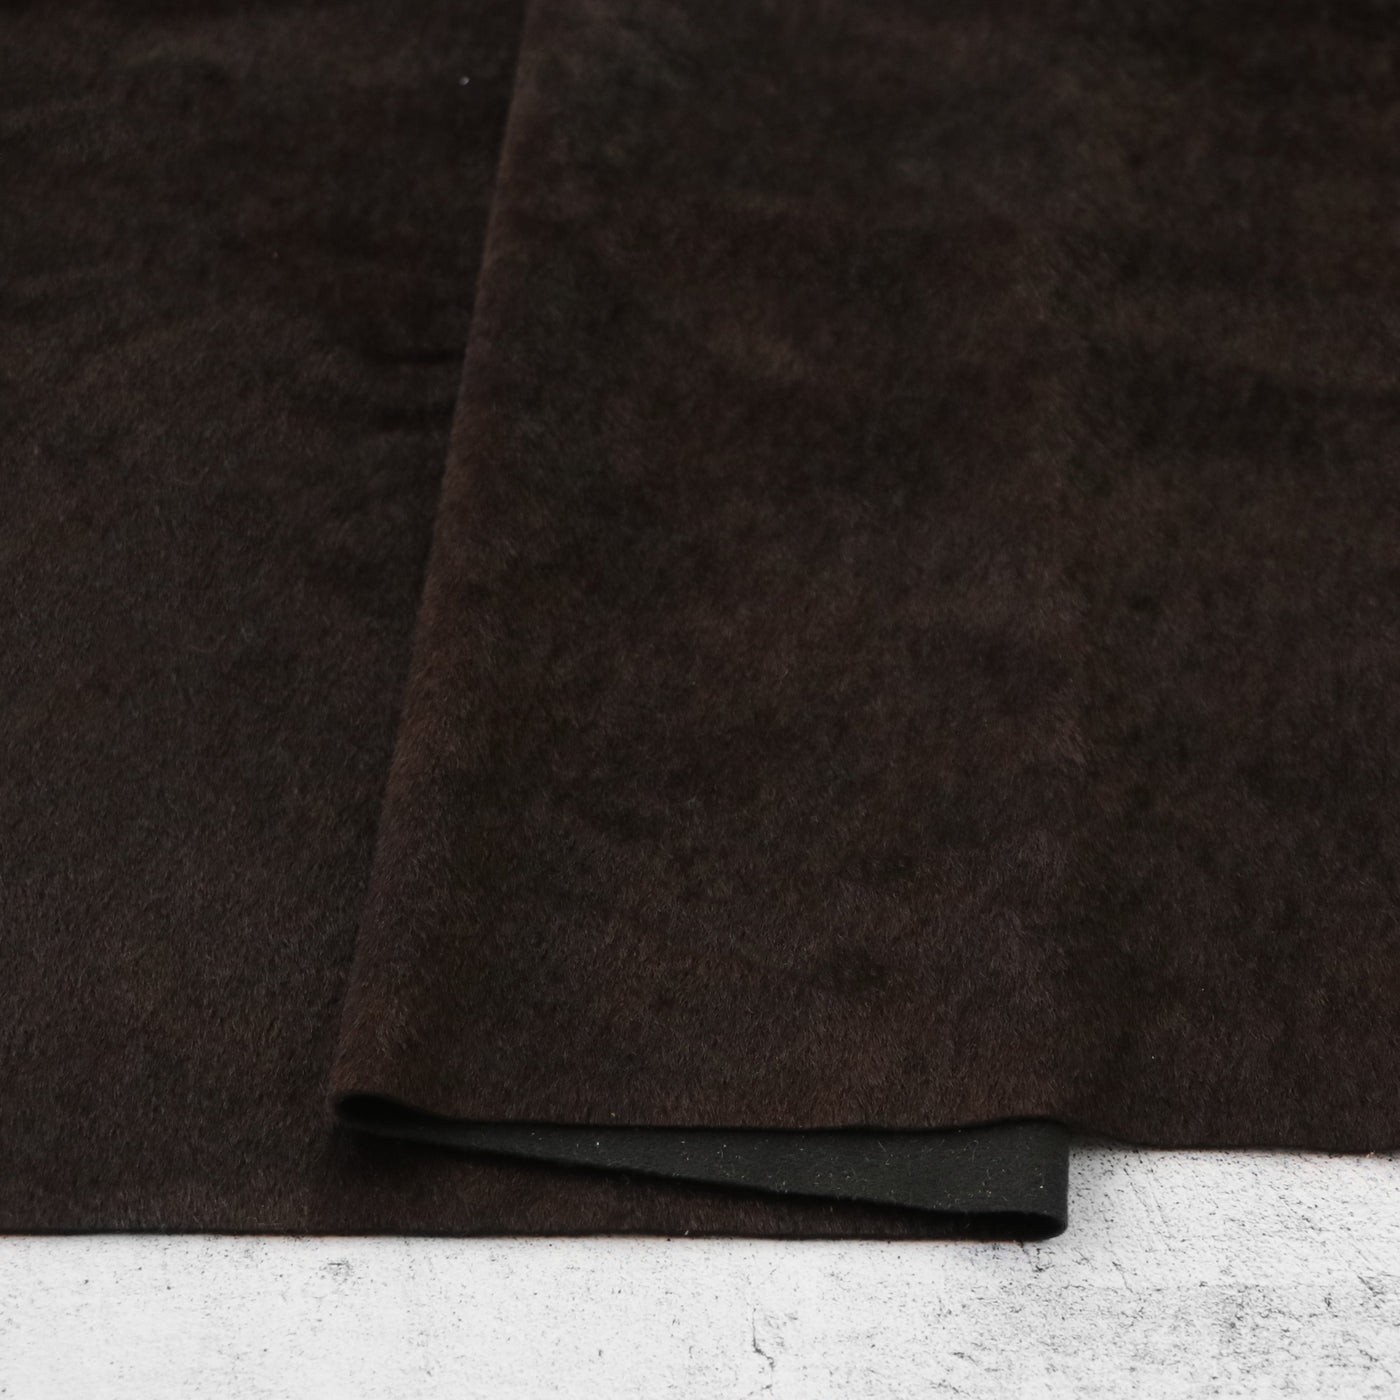 Corte empaquetado de 1/2 yarda: Piel sintética de color espresso tonal Tie Dye